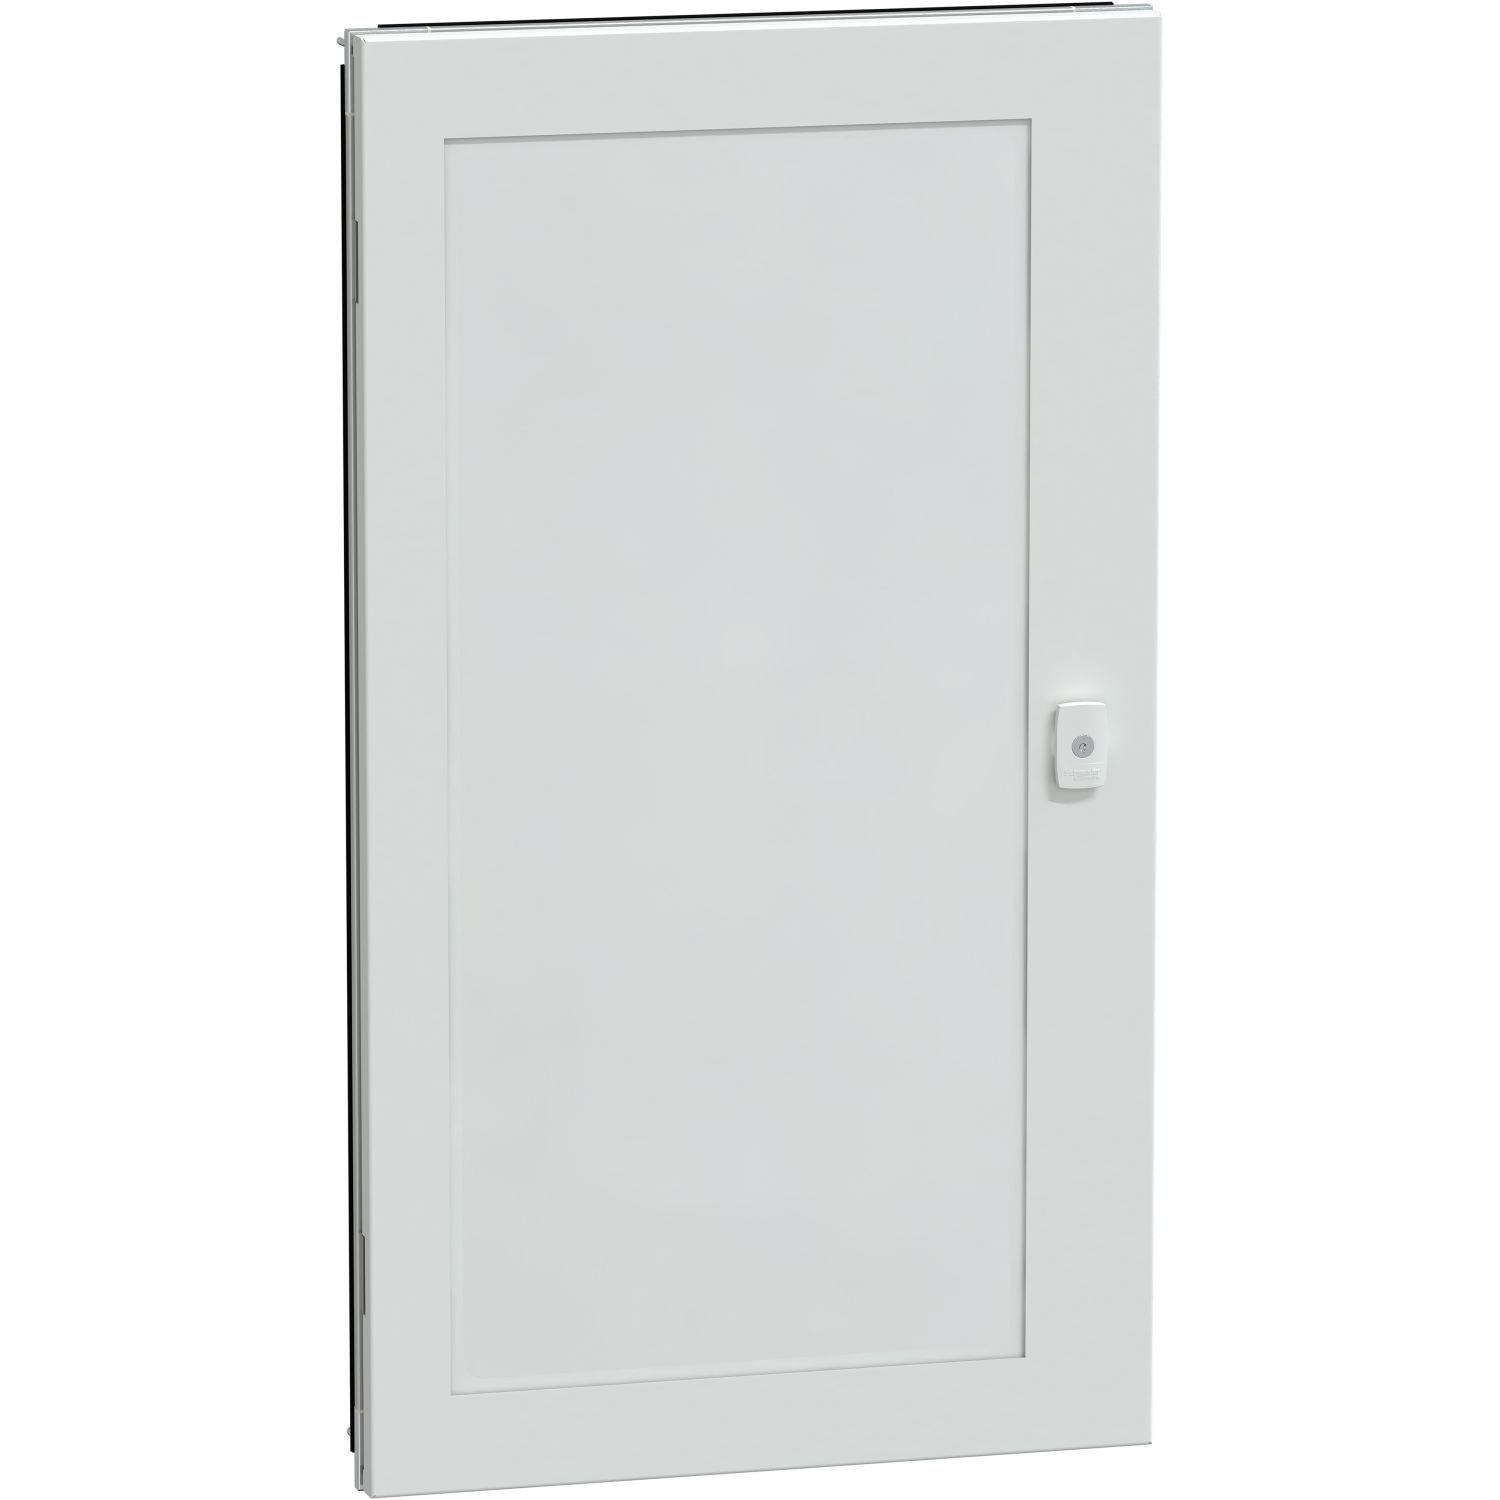 Átlátszó ajtó g szekrény IP55 19m